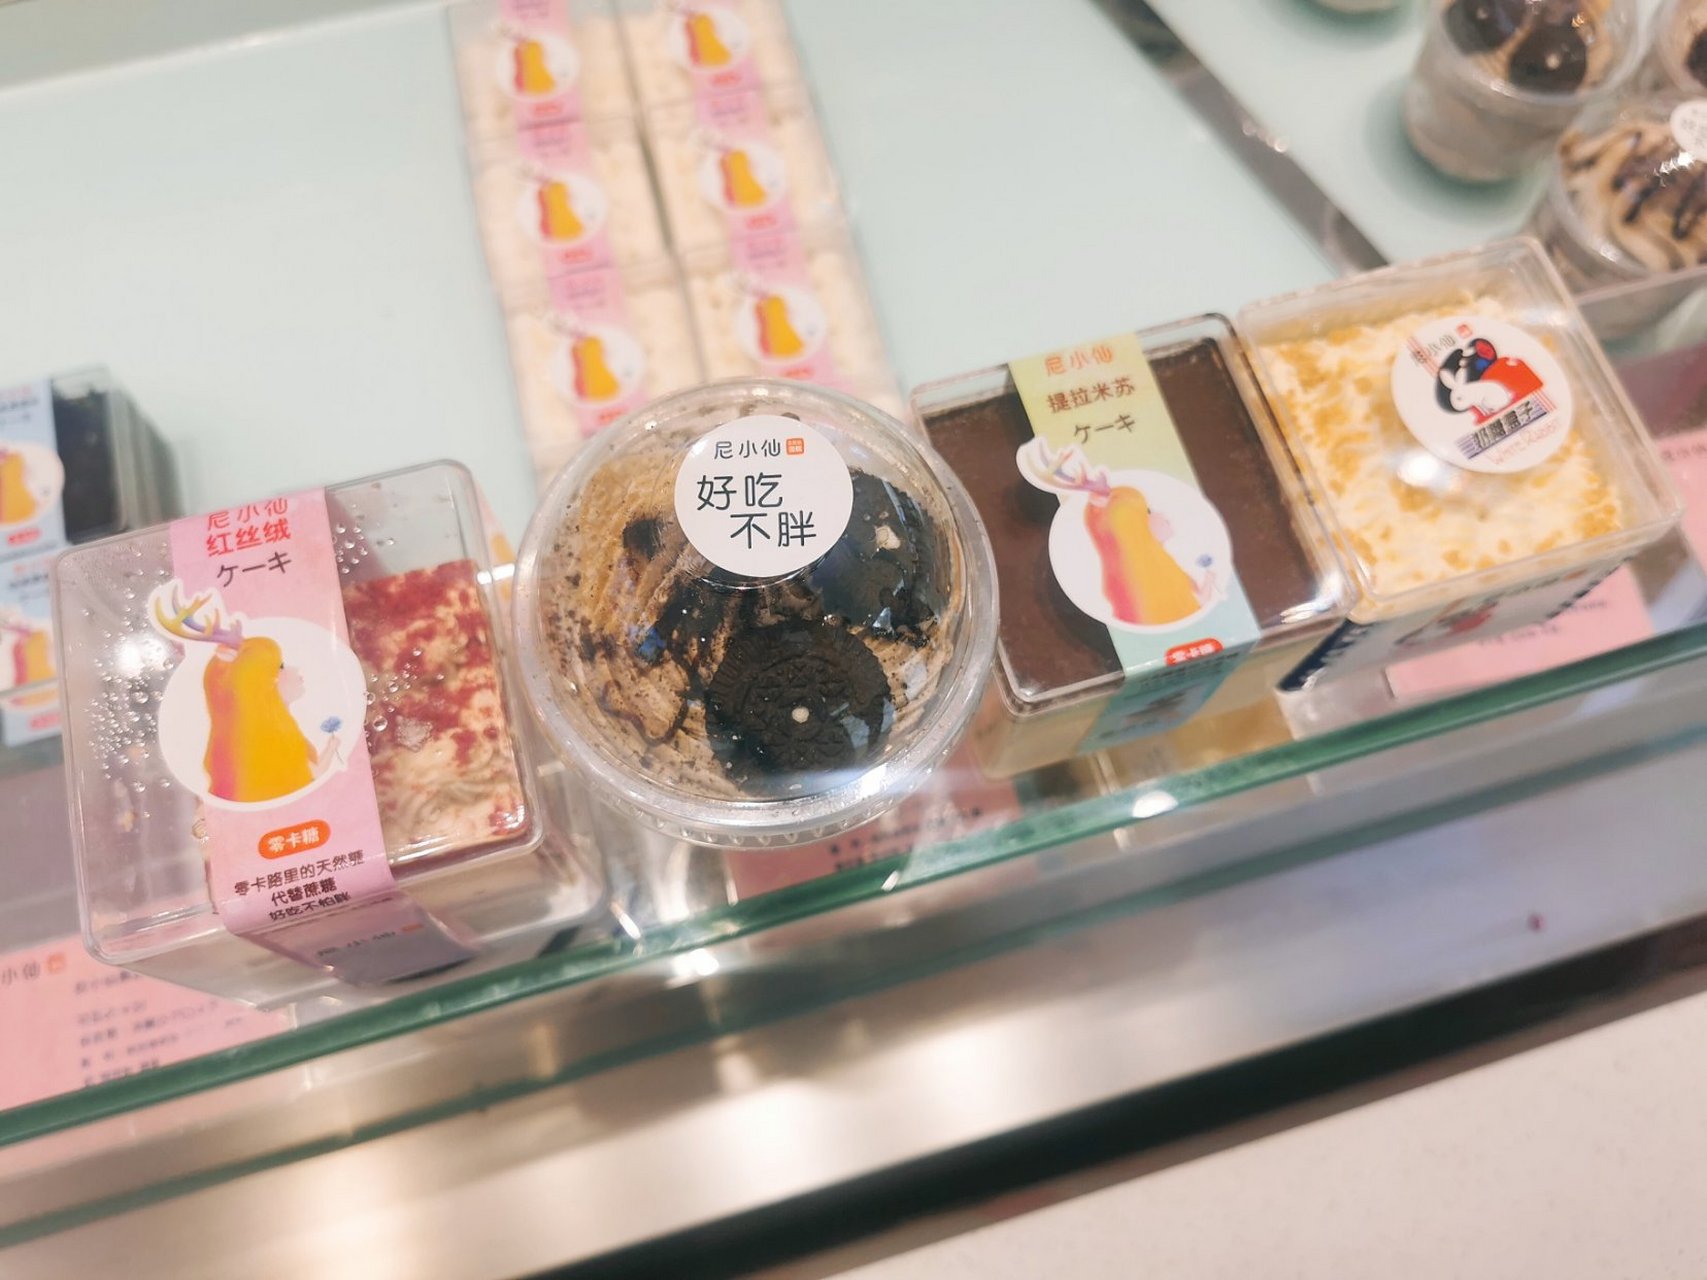 0卡糖少女心蛋糕 店名:尼小仙蛋糕 位置:唐山吾悦广场6楼 环境:少女